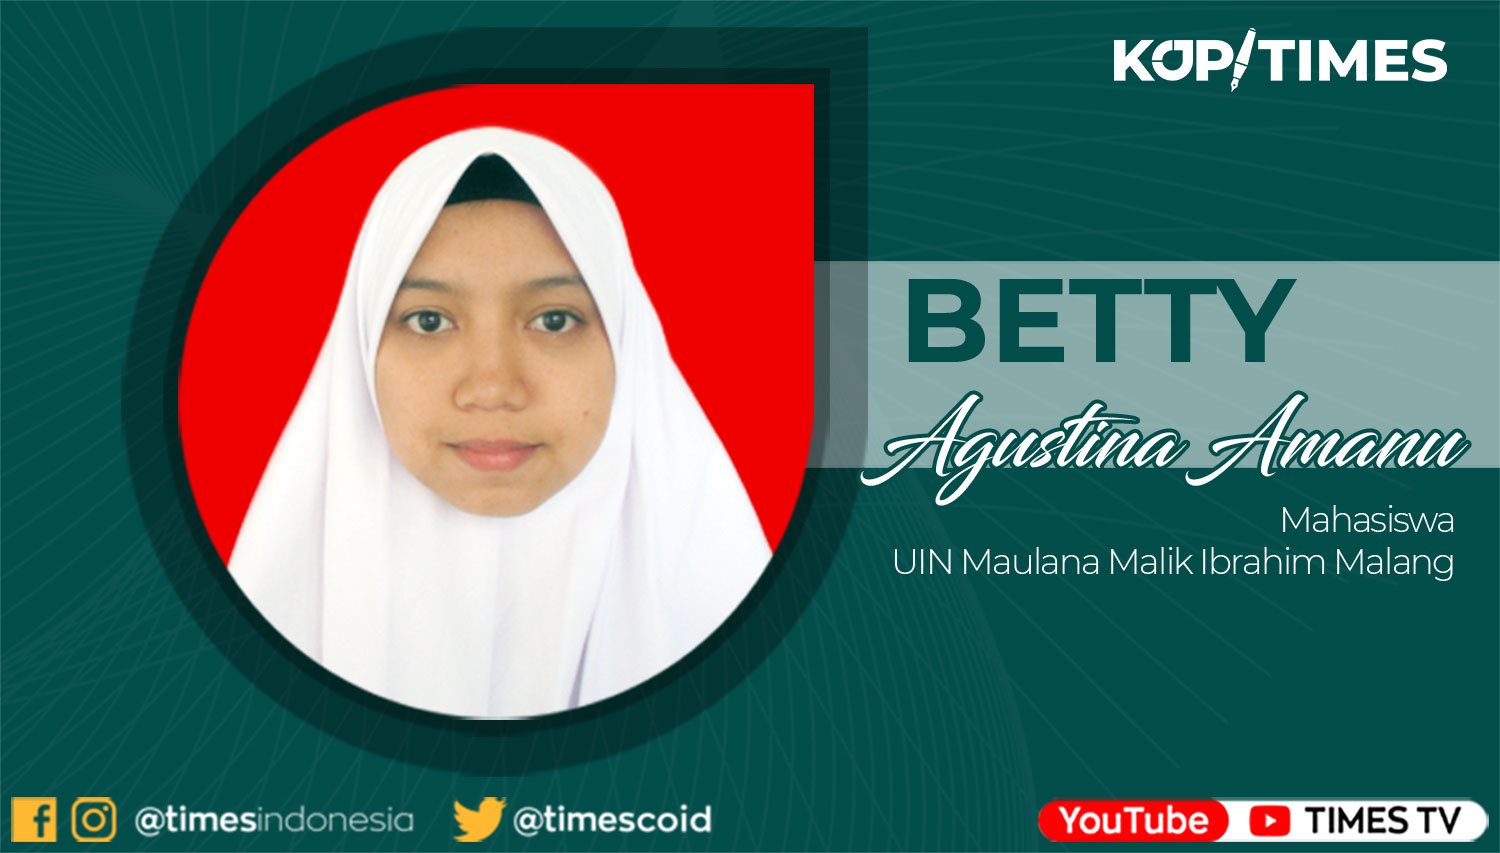 Betty Agustina Amanu, Mahasiswa UIN Maulana Malik Ibrahim Malang.